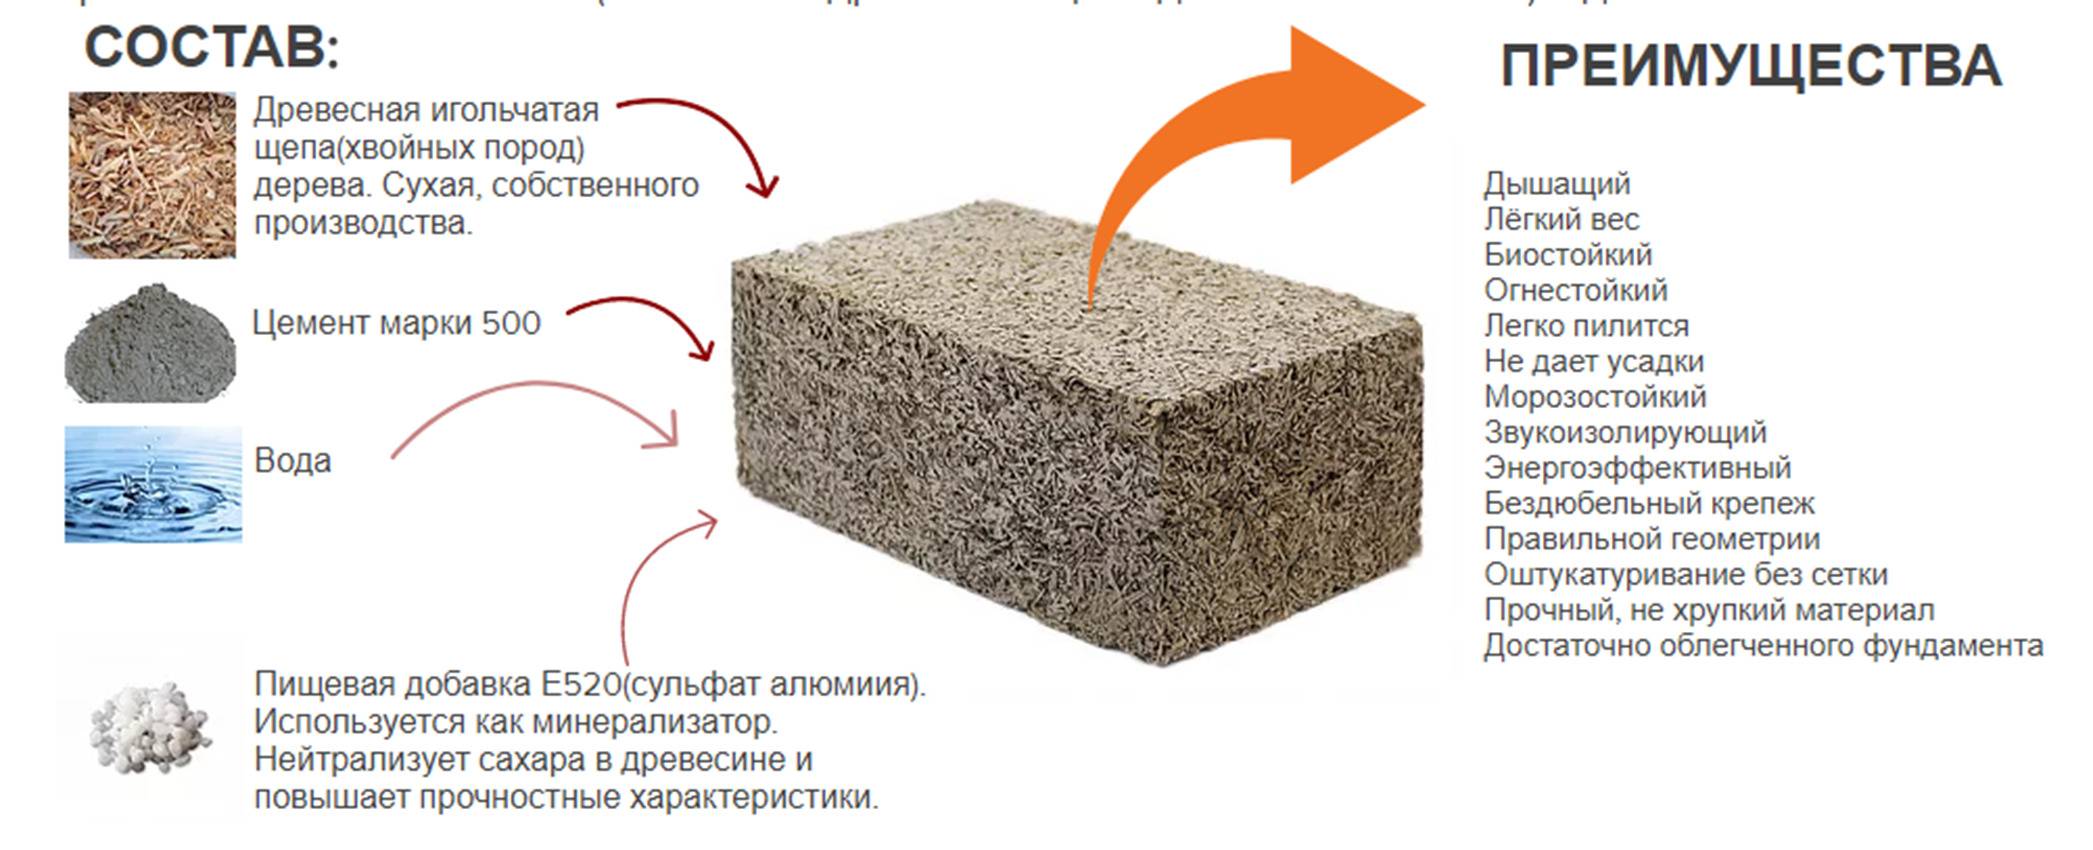 Арболитовые блоки: размеры и характеристики, отзывы владельцев домов о минусах